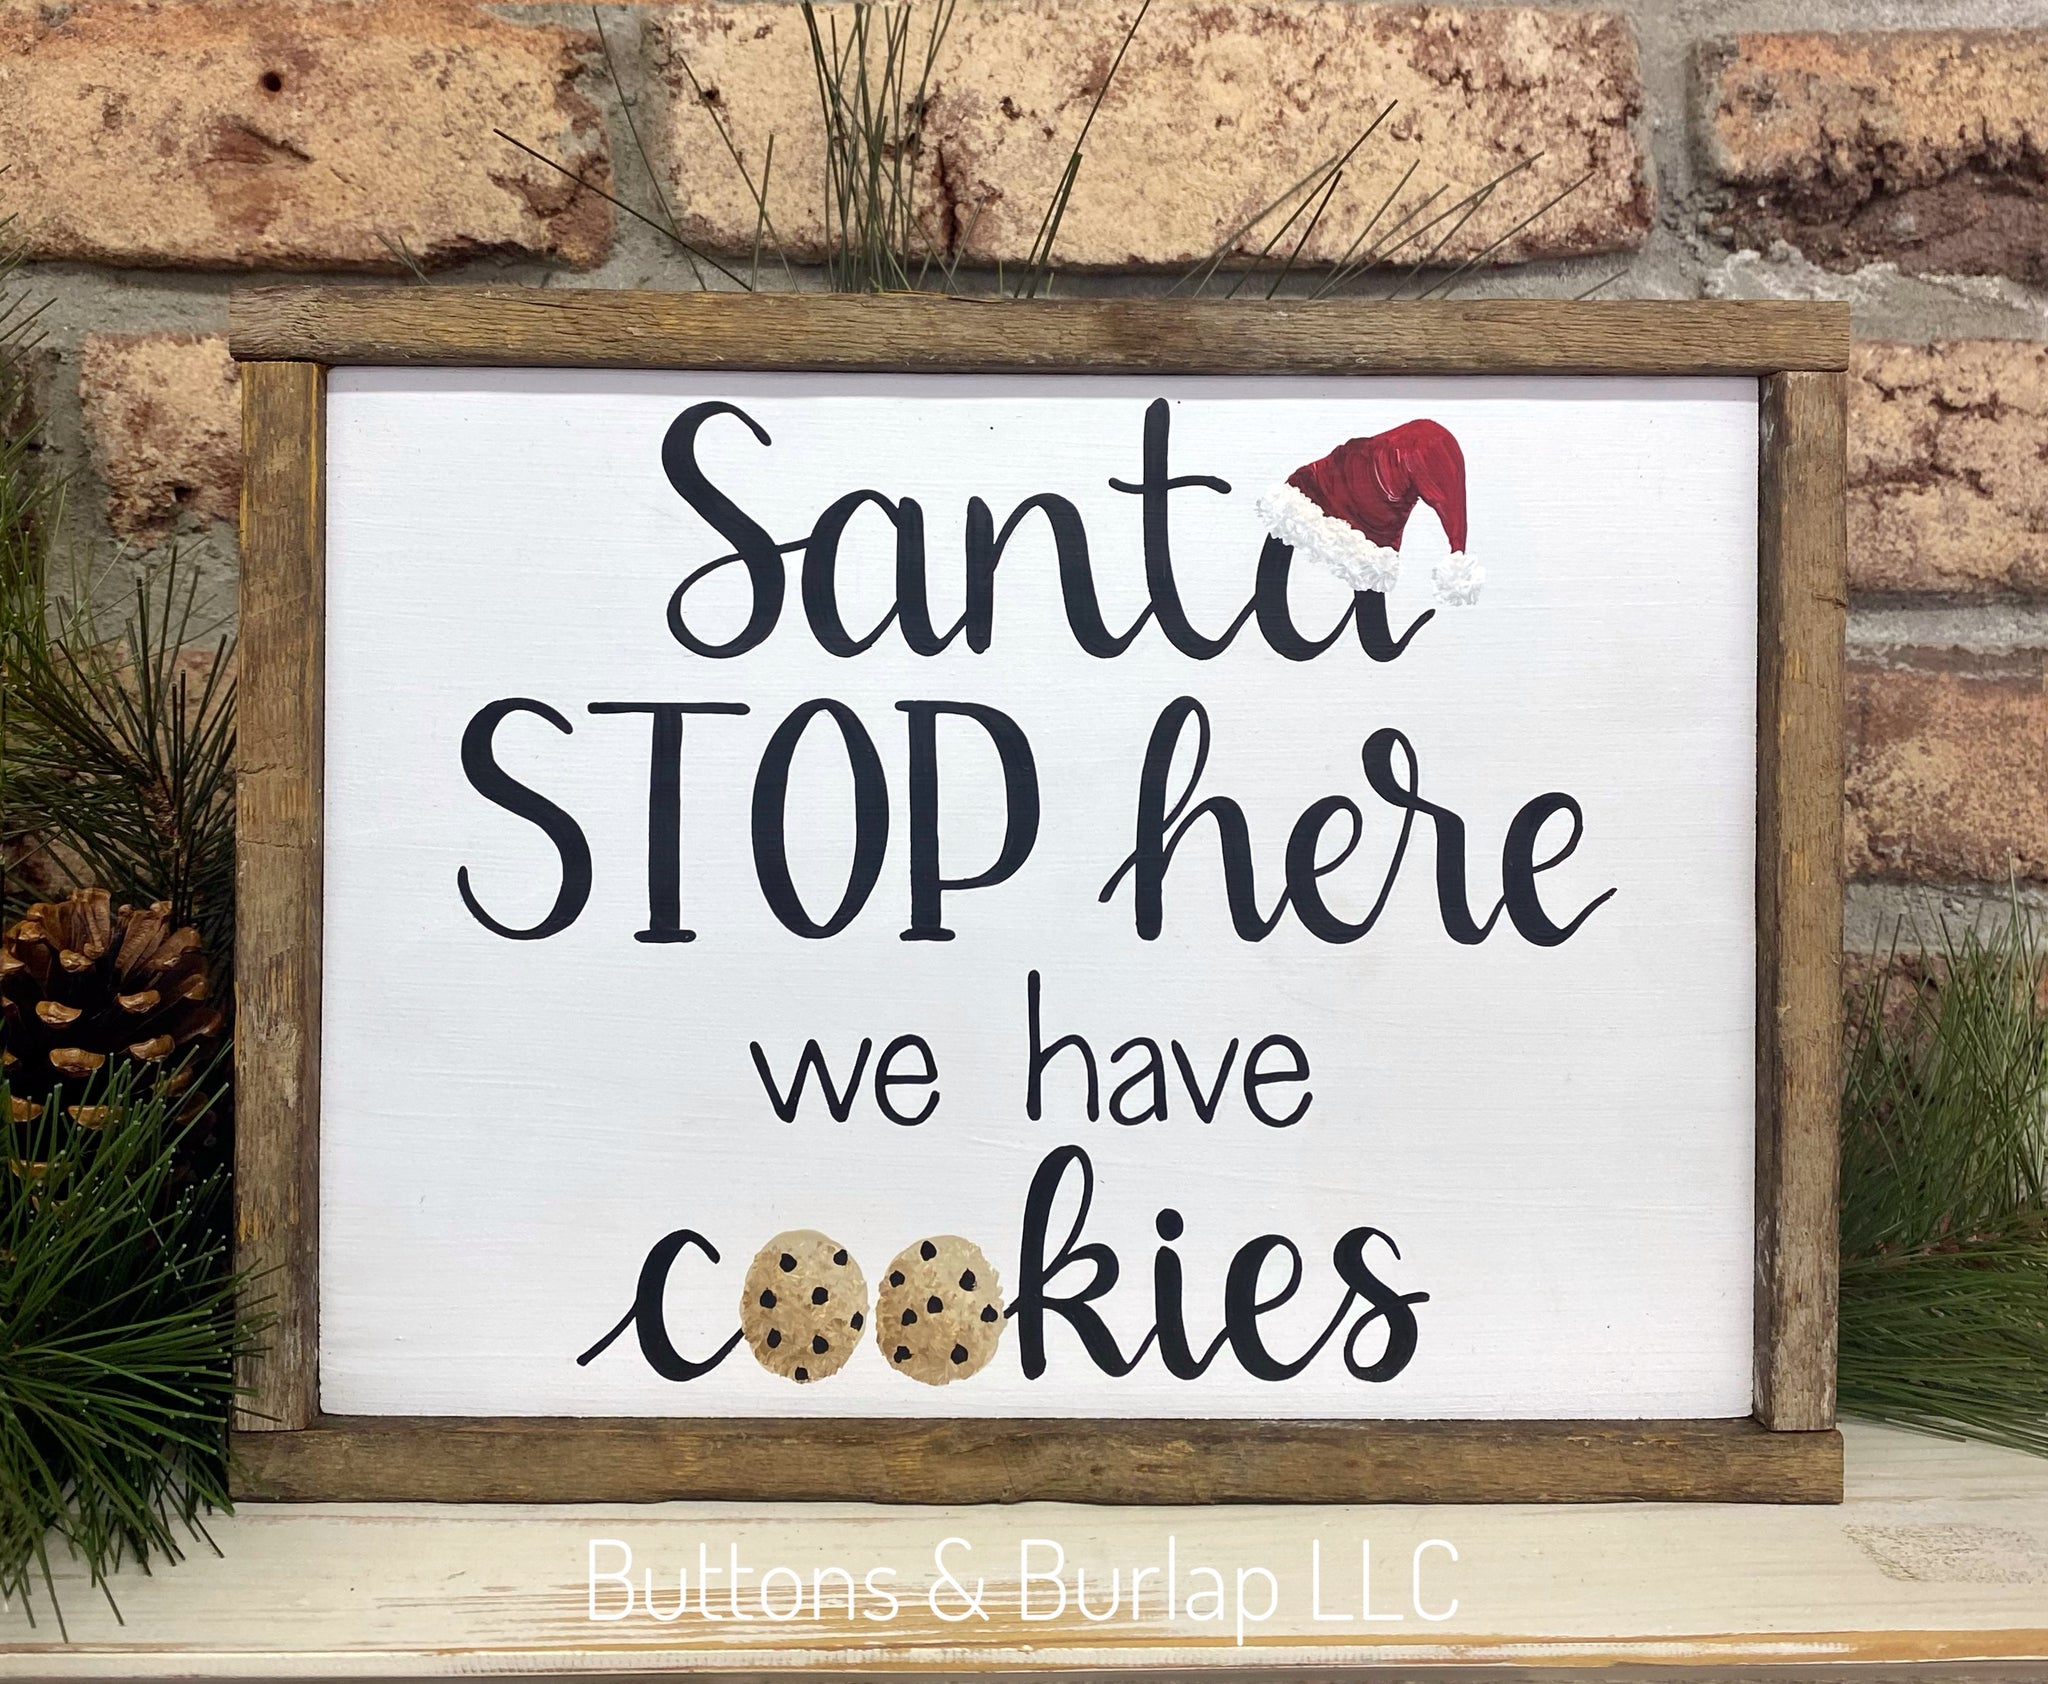 Santa STOP here, we have cookies